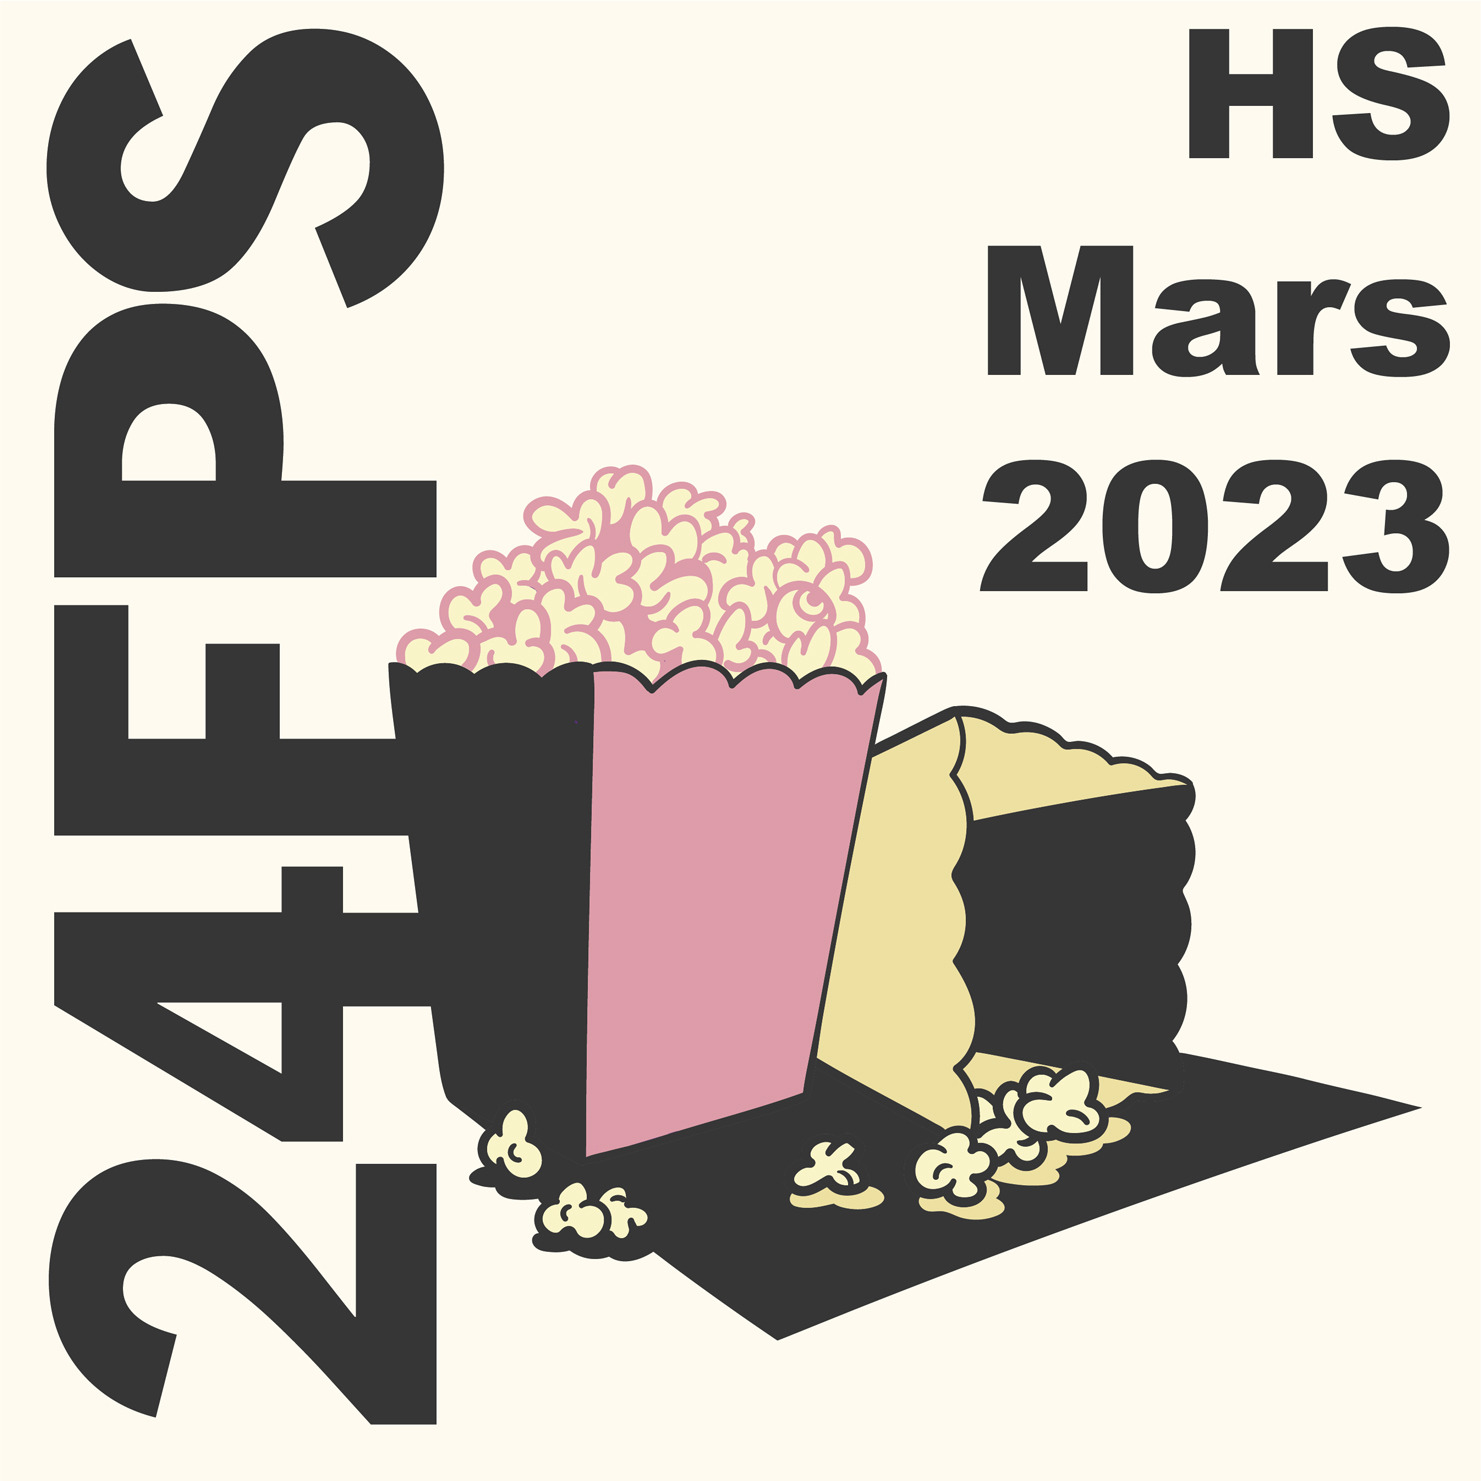 24FPS HS Mars 2023